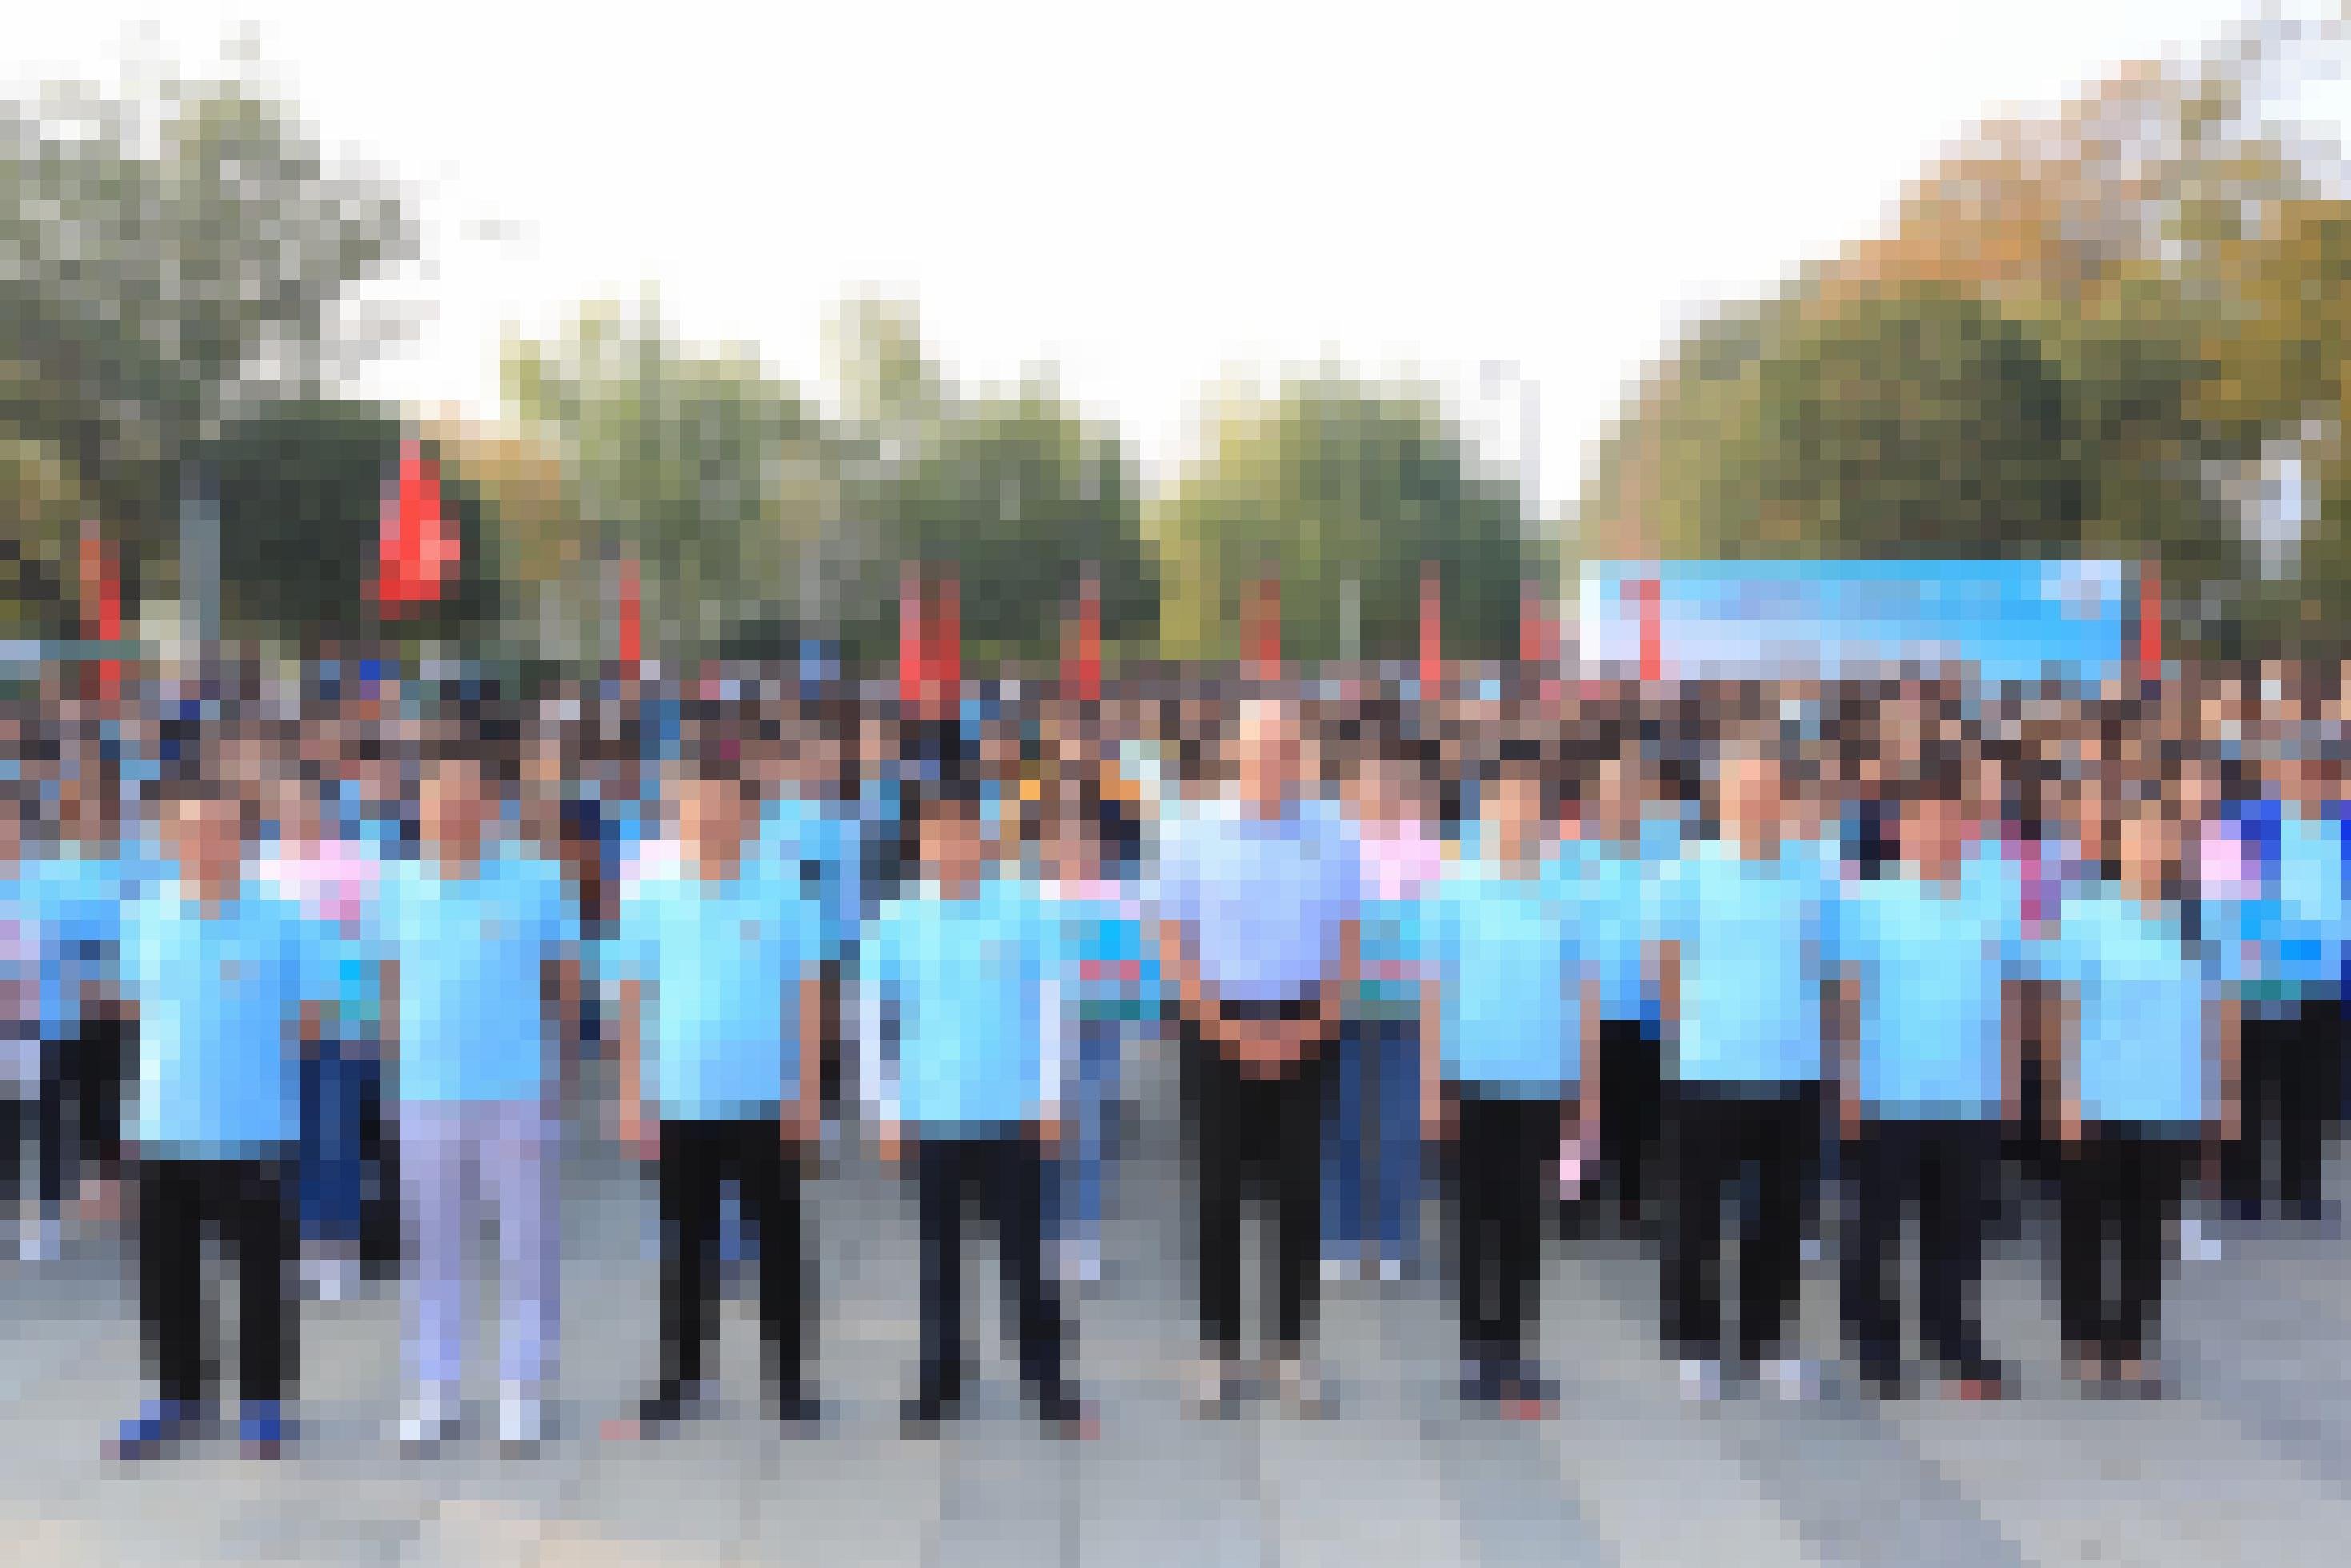 Das Bild zeigt Eckard Nagel bei einer Versammlung von Krankenhausmitarbeitern in Wuhan. Die Belegschaft steht in Reih und Glied. Zu sehen sind zahlreiche Menschen. In ihrer Mitte steht Nagel.